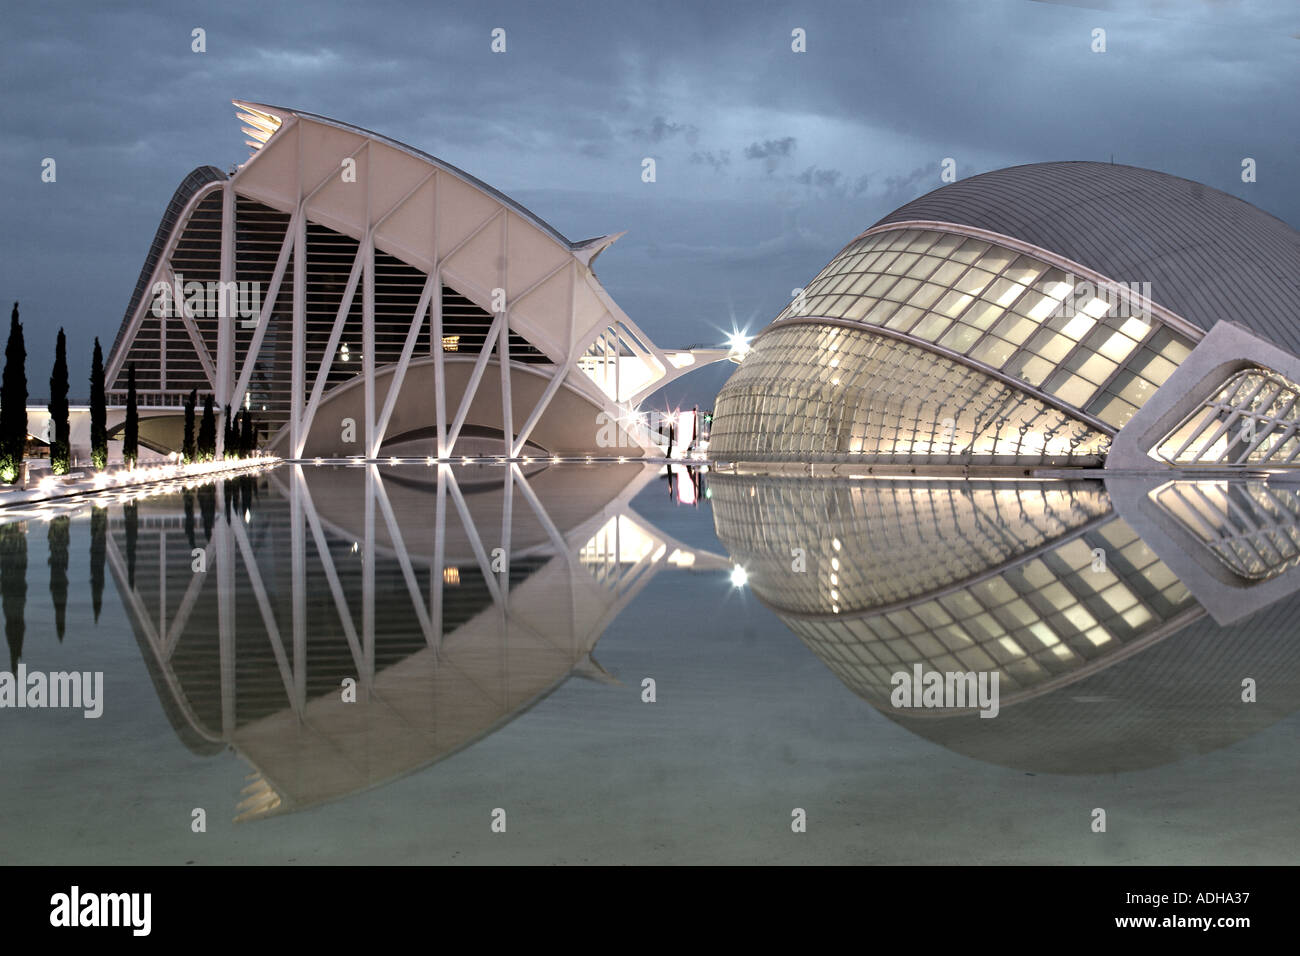 Spain Valencia City of sciences and arts by architect Santiago Calatrava twilight  Stock Photo